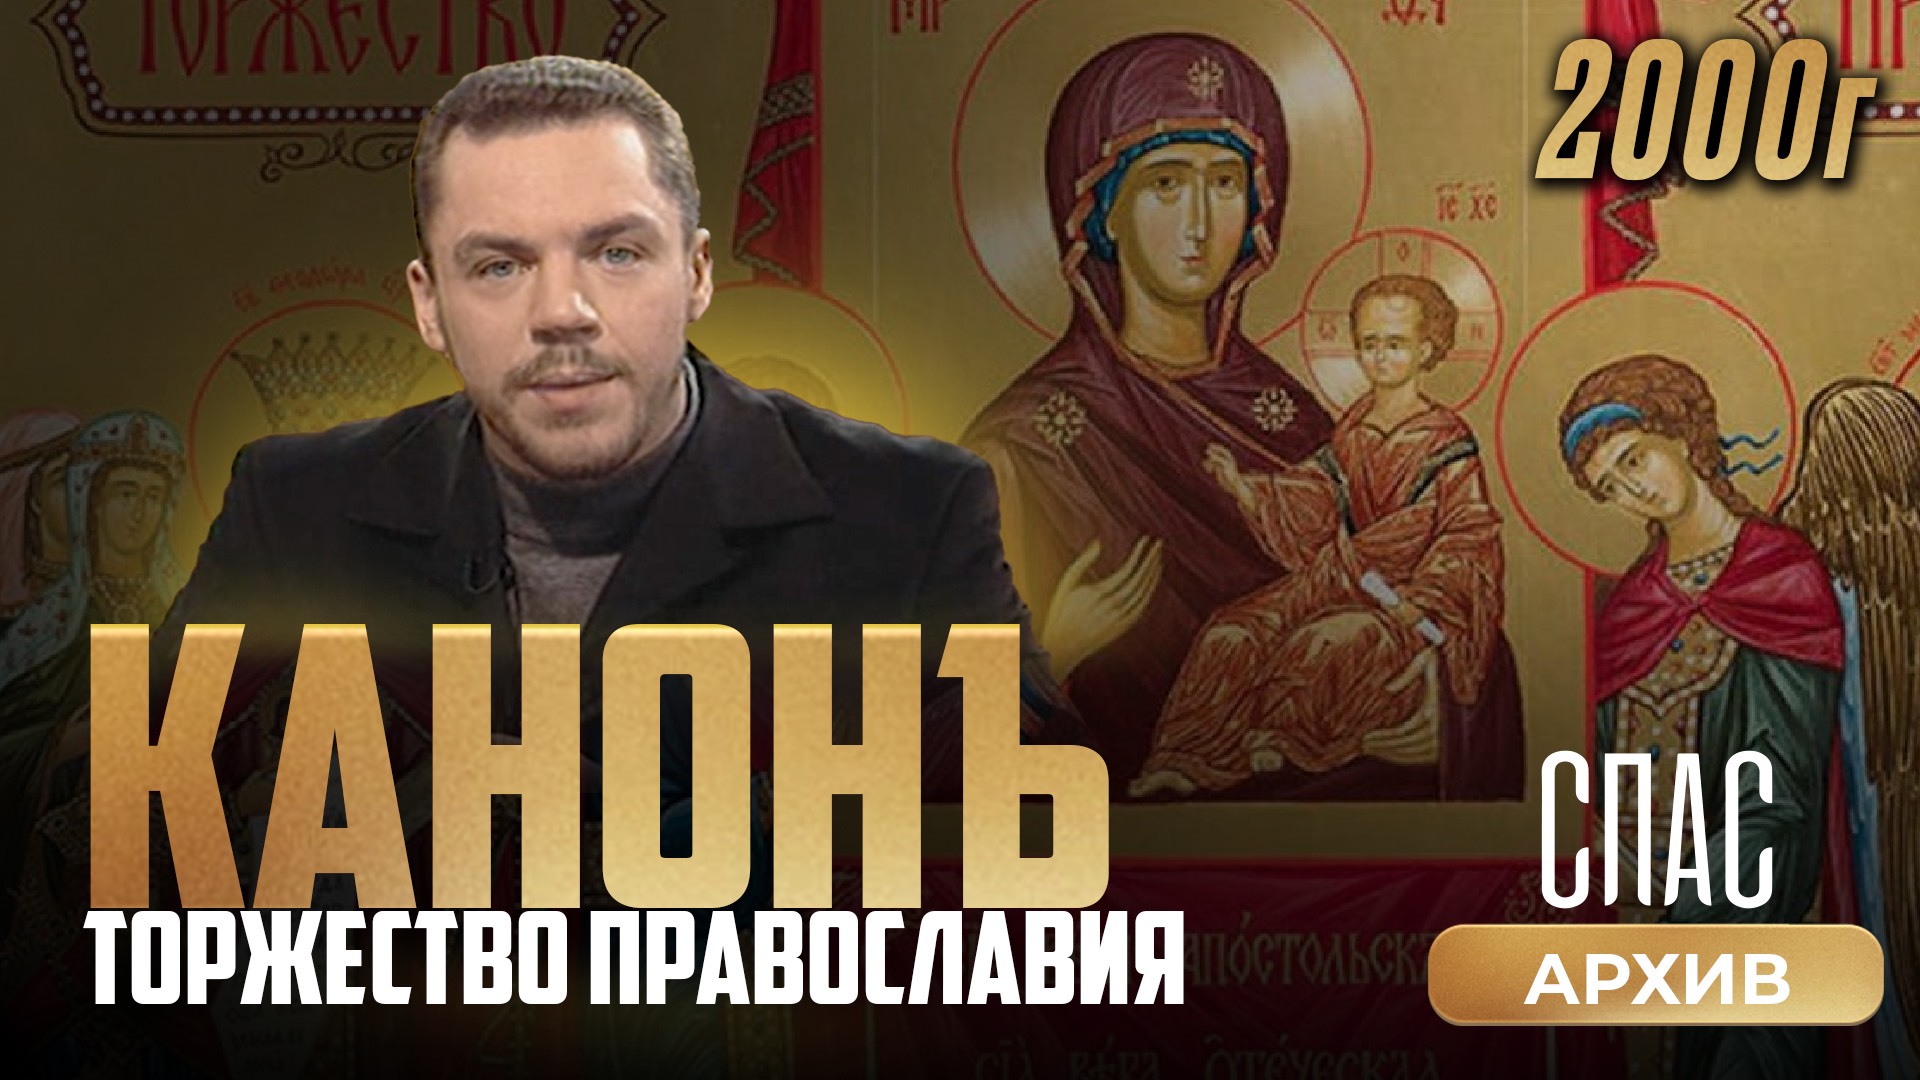 Торжество Православия. Канон (2000)